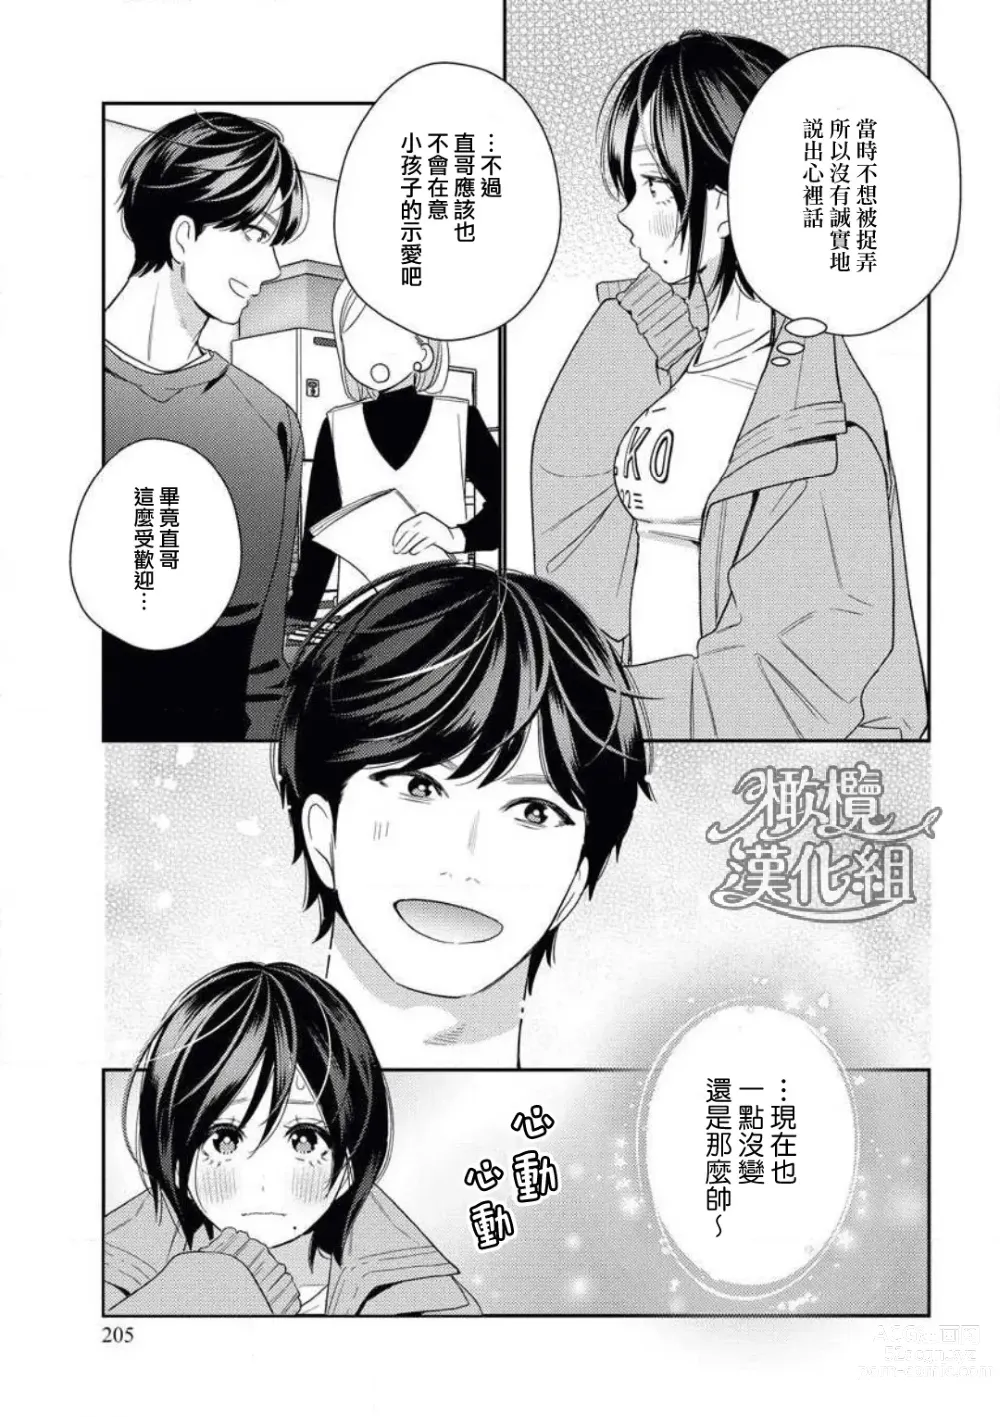 Page 7 of manga 青梅竹马难以攻陷被小黄话（※正当工作需求）玩弄一番